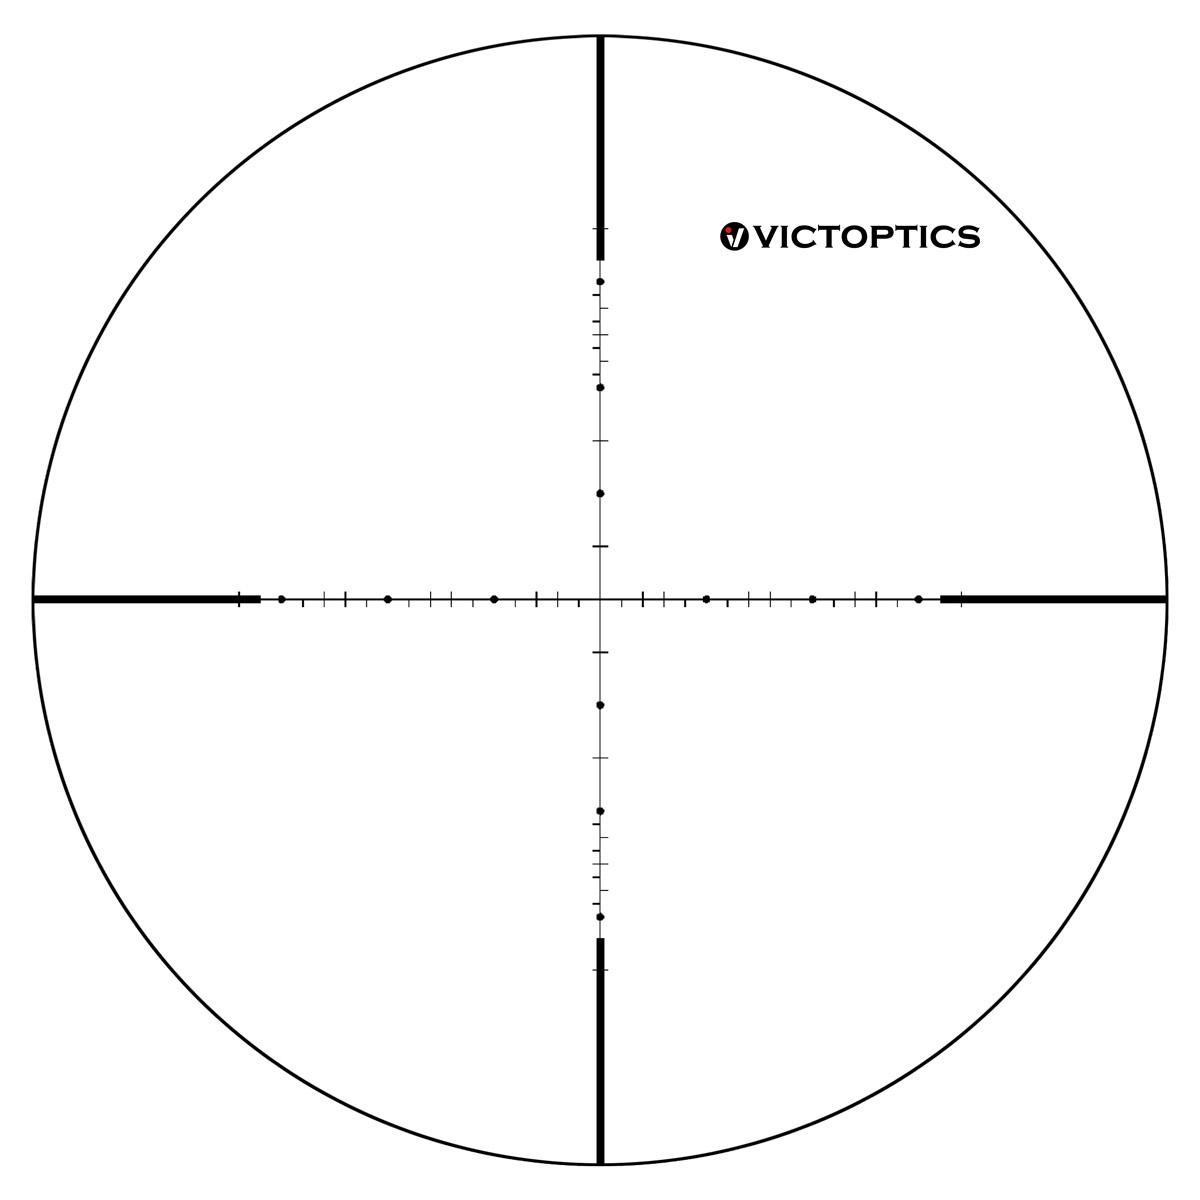 Victoptics S4 4-16x44 MDL Riflescope OPSL16